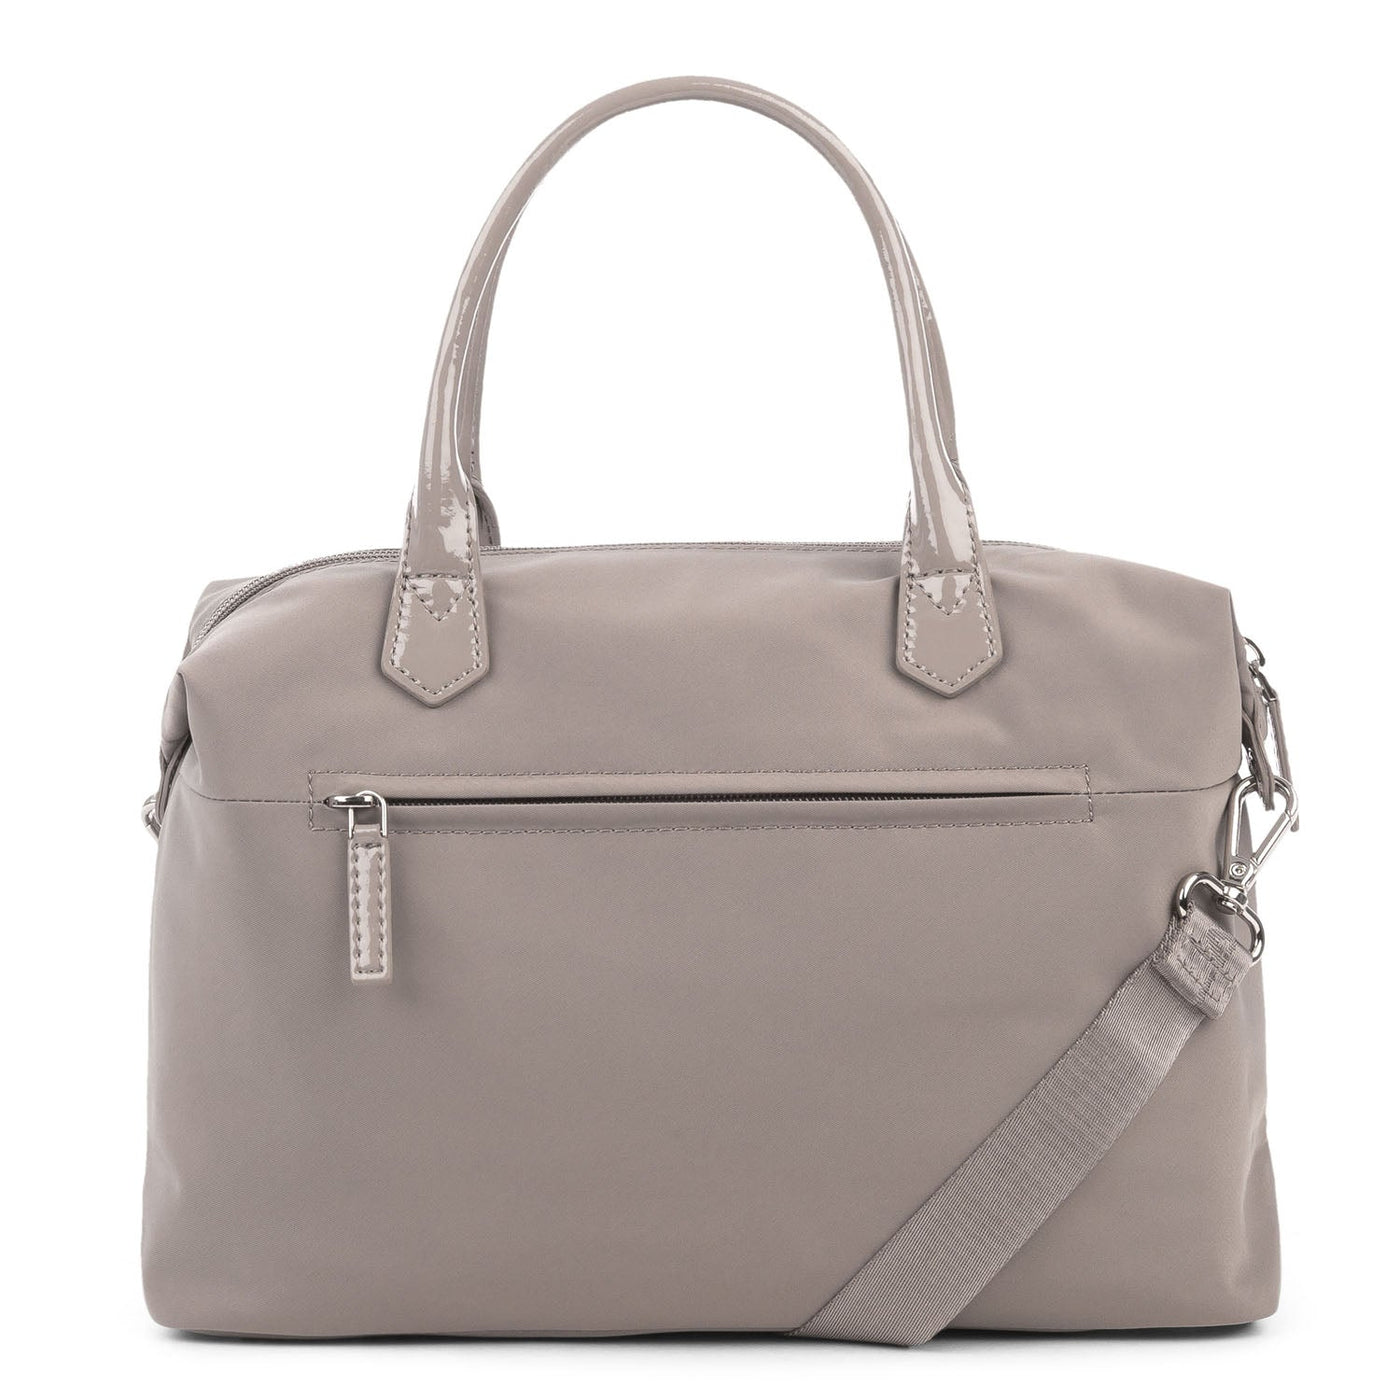 m handbag - basic verni #couleur_galet